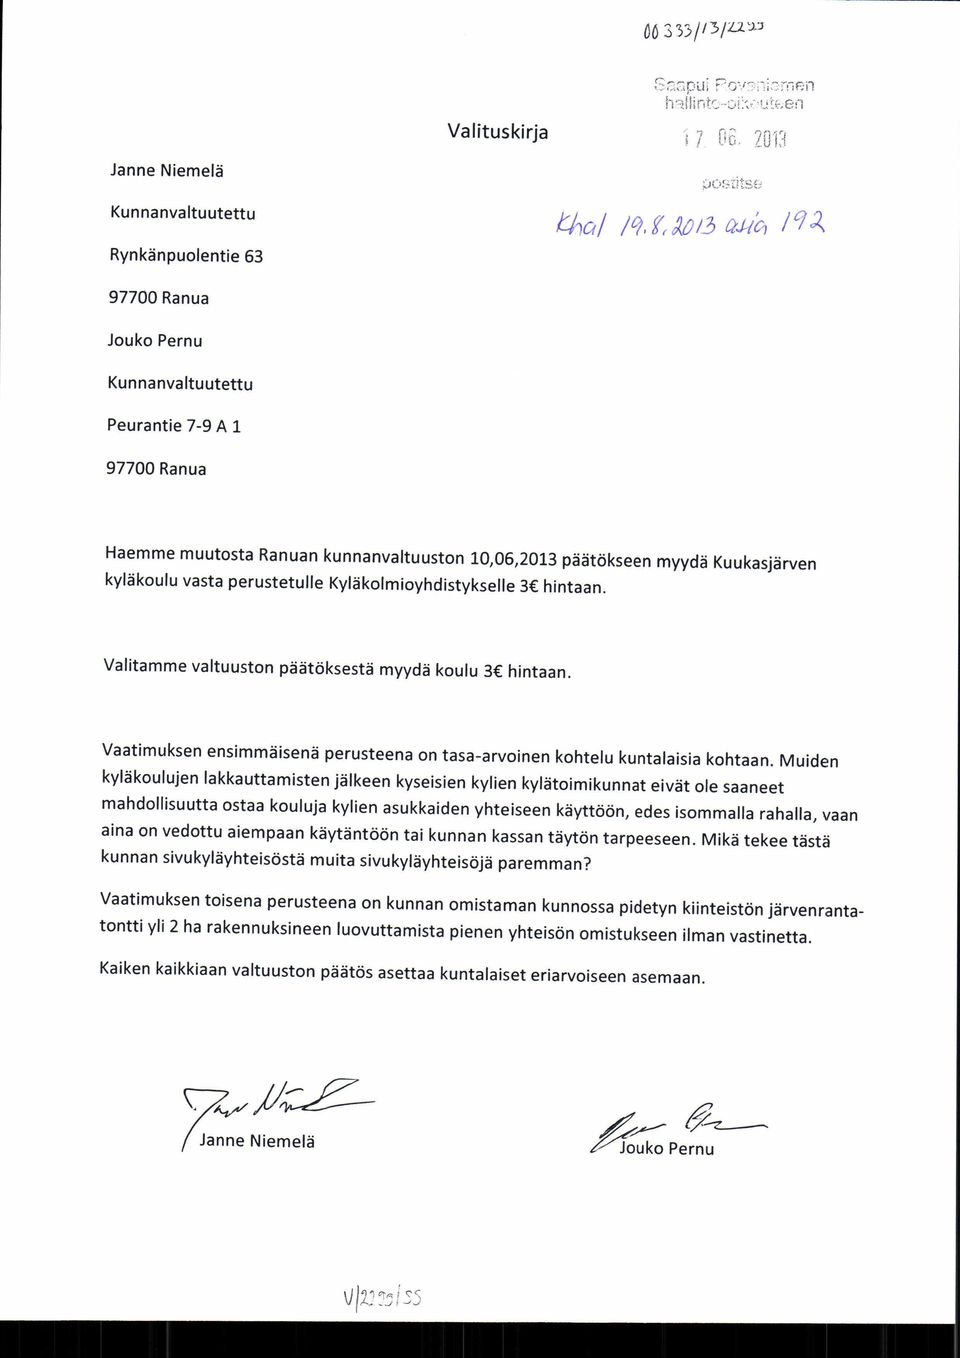 10,06,2013 päätökseen myydä Kuukasjärven Vaatimuksen ensimmäisenä perusteena on tasa-arvoinen kohtelu kuntalaisia kohtaan.